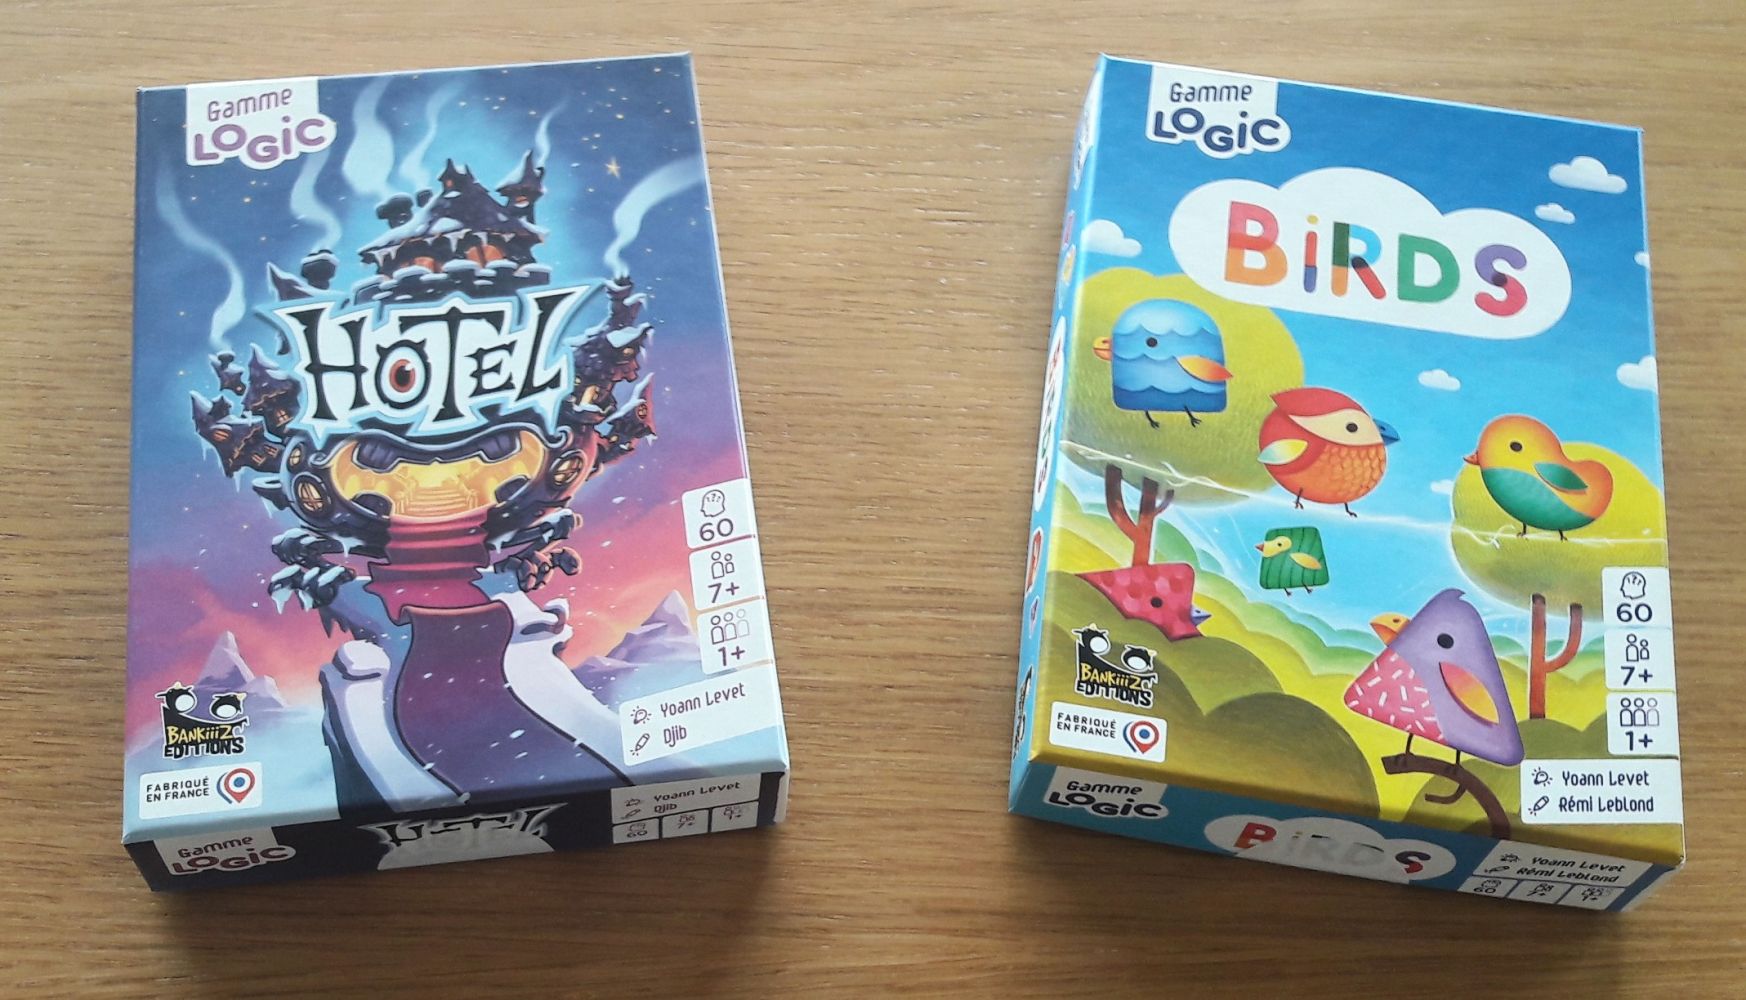 Voici les 2 premiers jeux de la gamme Logic déjà sortis… un autre est déjà prévu.